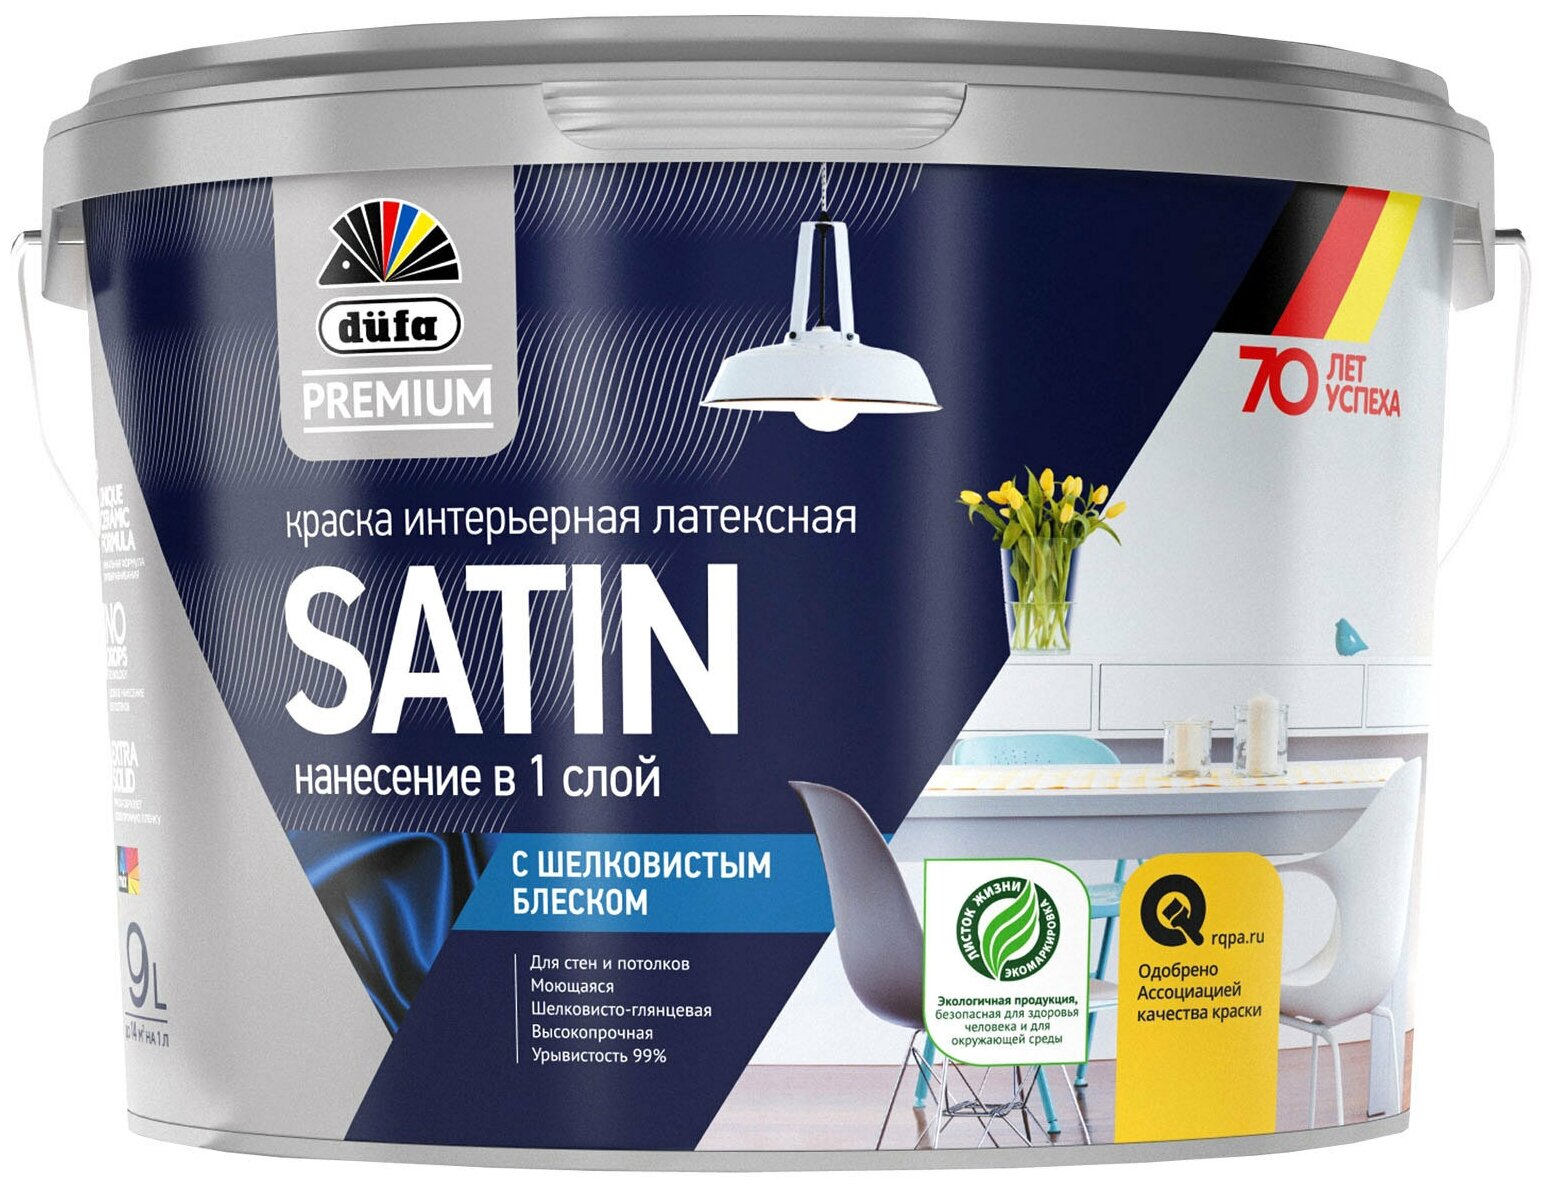 Dufa Premium ВД краска SATIN латексная интерьерная с шелковистым блеском база 1 9л МП00-006674